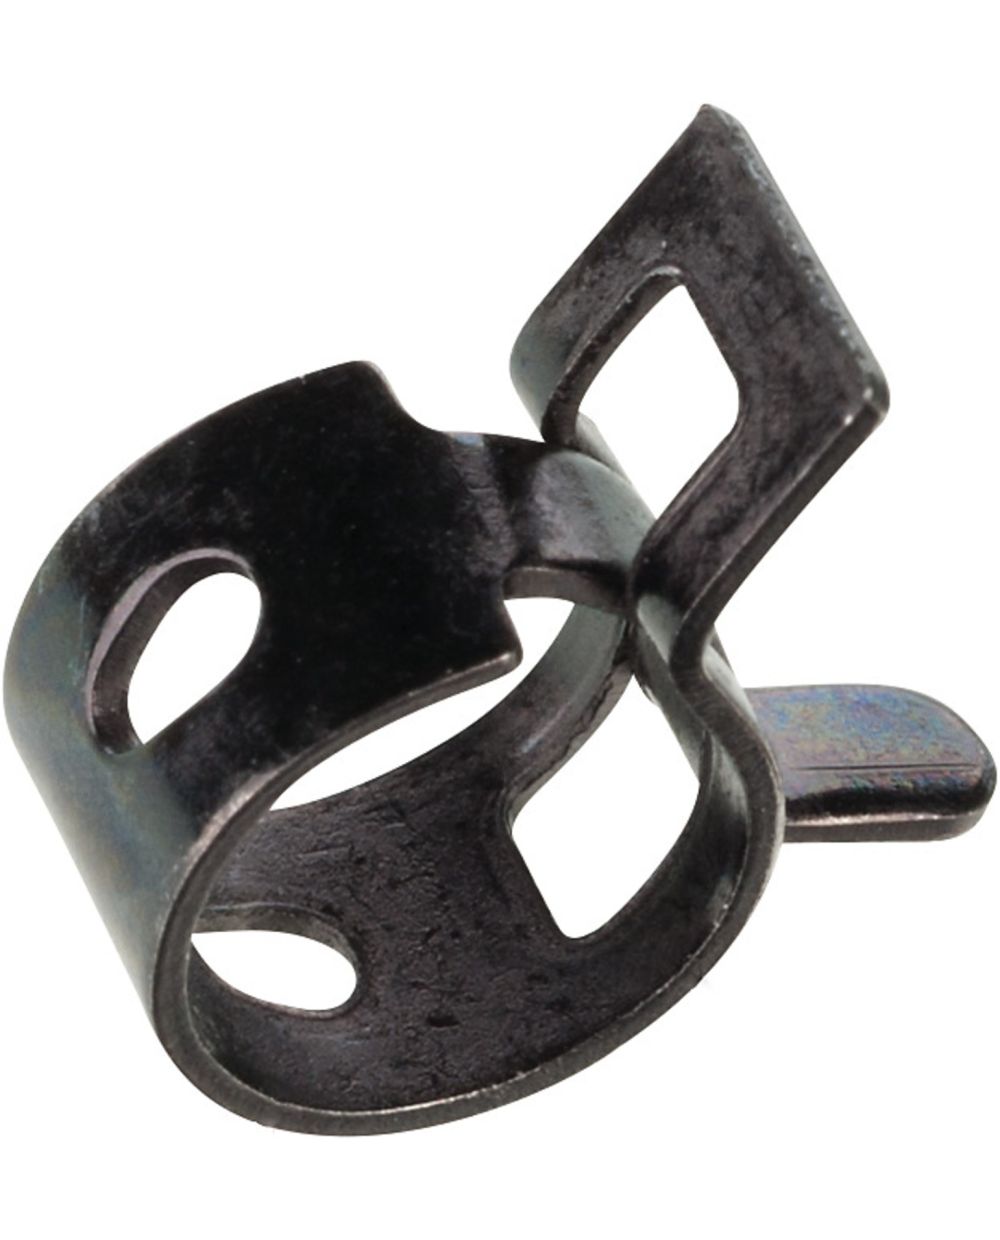 8mm Federklemme (Bandschelle), passend für ca. 8.5-10mm Außendurchmesser, 1  Stück